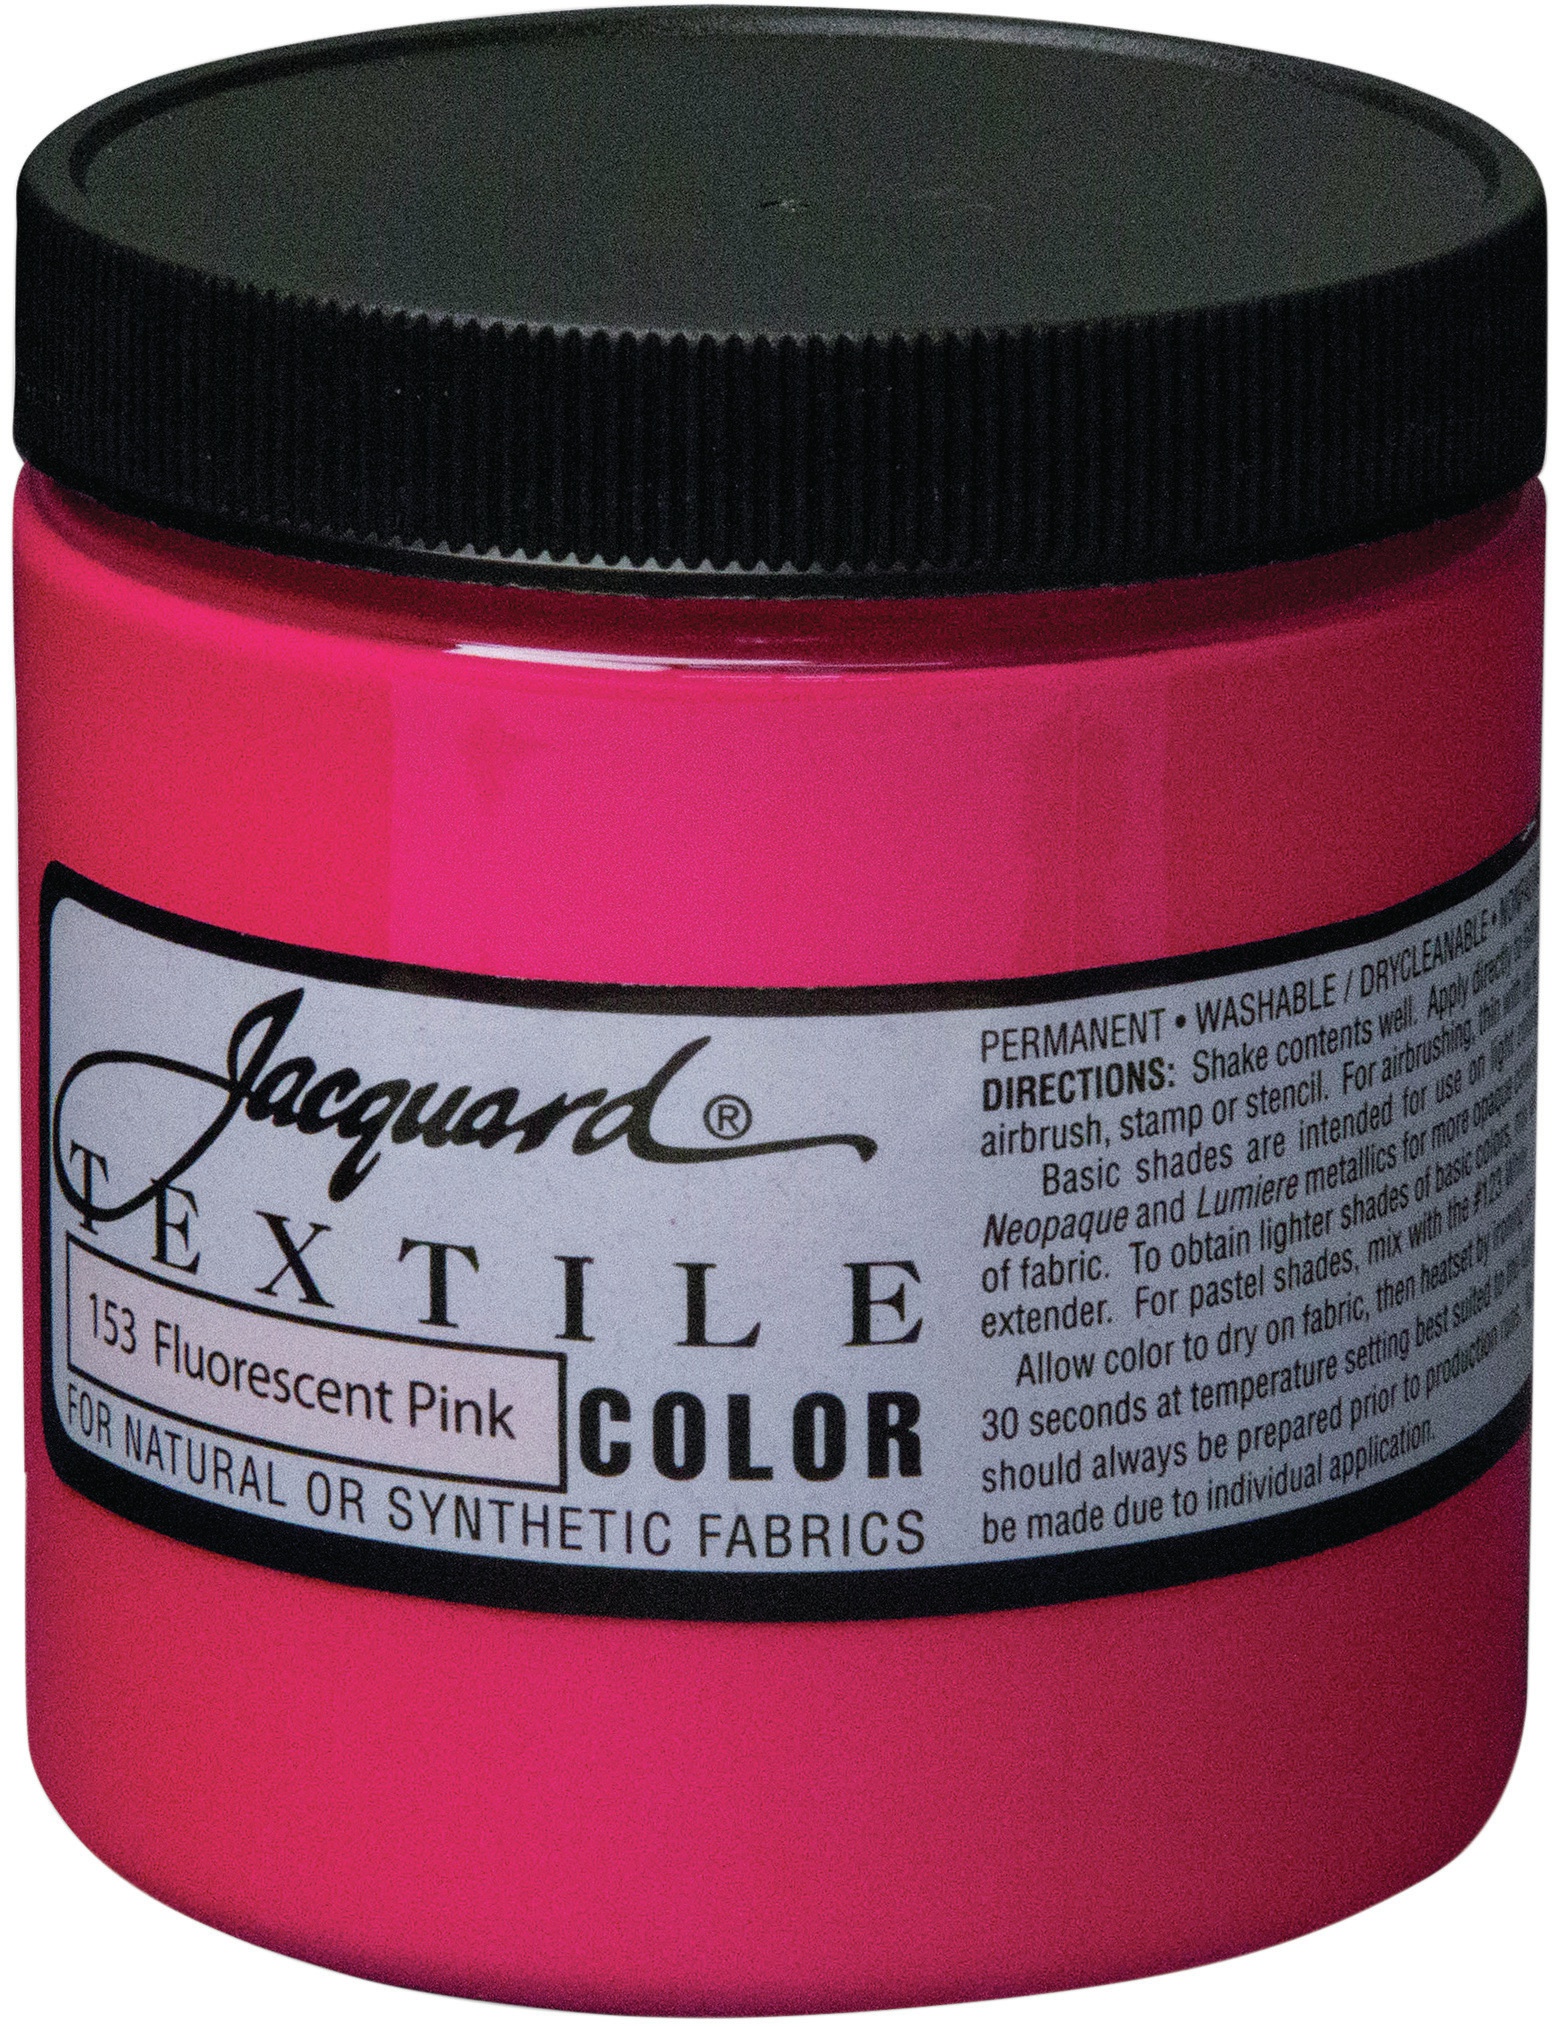 Jacquard Textile Color Fabric Paint 8oz-Fluorescent Pink | eBay